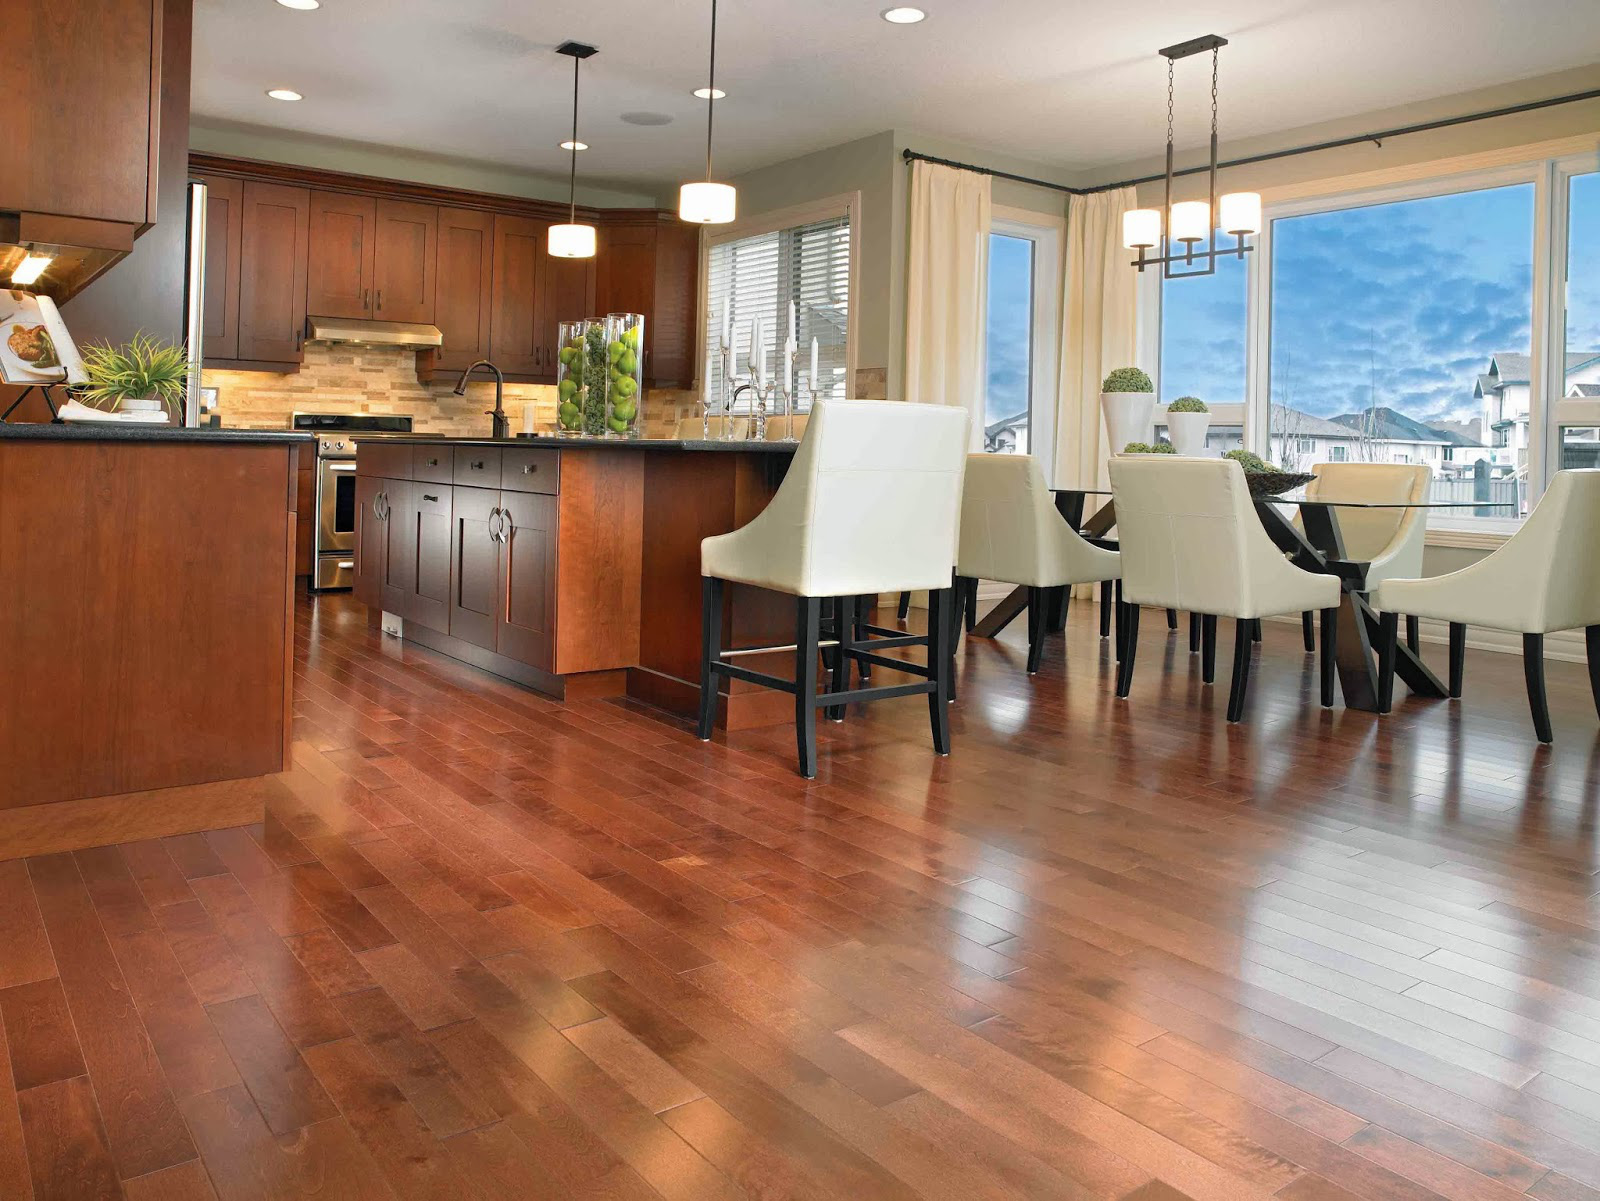  Không gian phòng ăn sang trọng và ấm cúng với tủ bếp gỗ kết hợp với sàn gỗ.